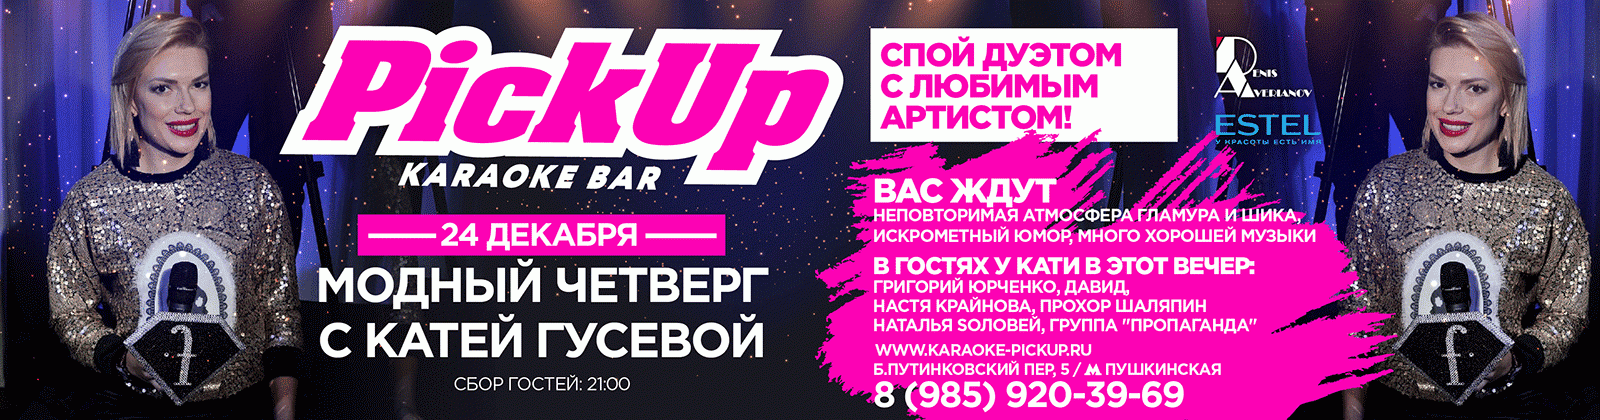 Fashion четверг с Катей Гусевой 24 декабря 2015 в лучшем концептуальном караоке столицы Pick UP